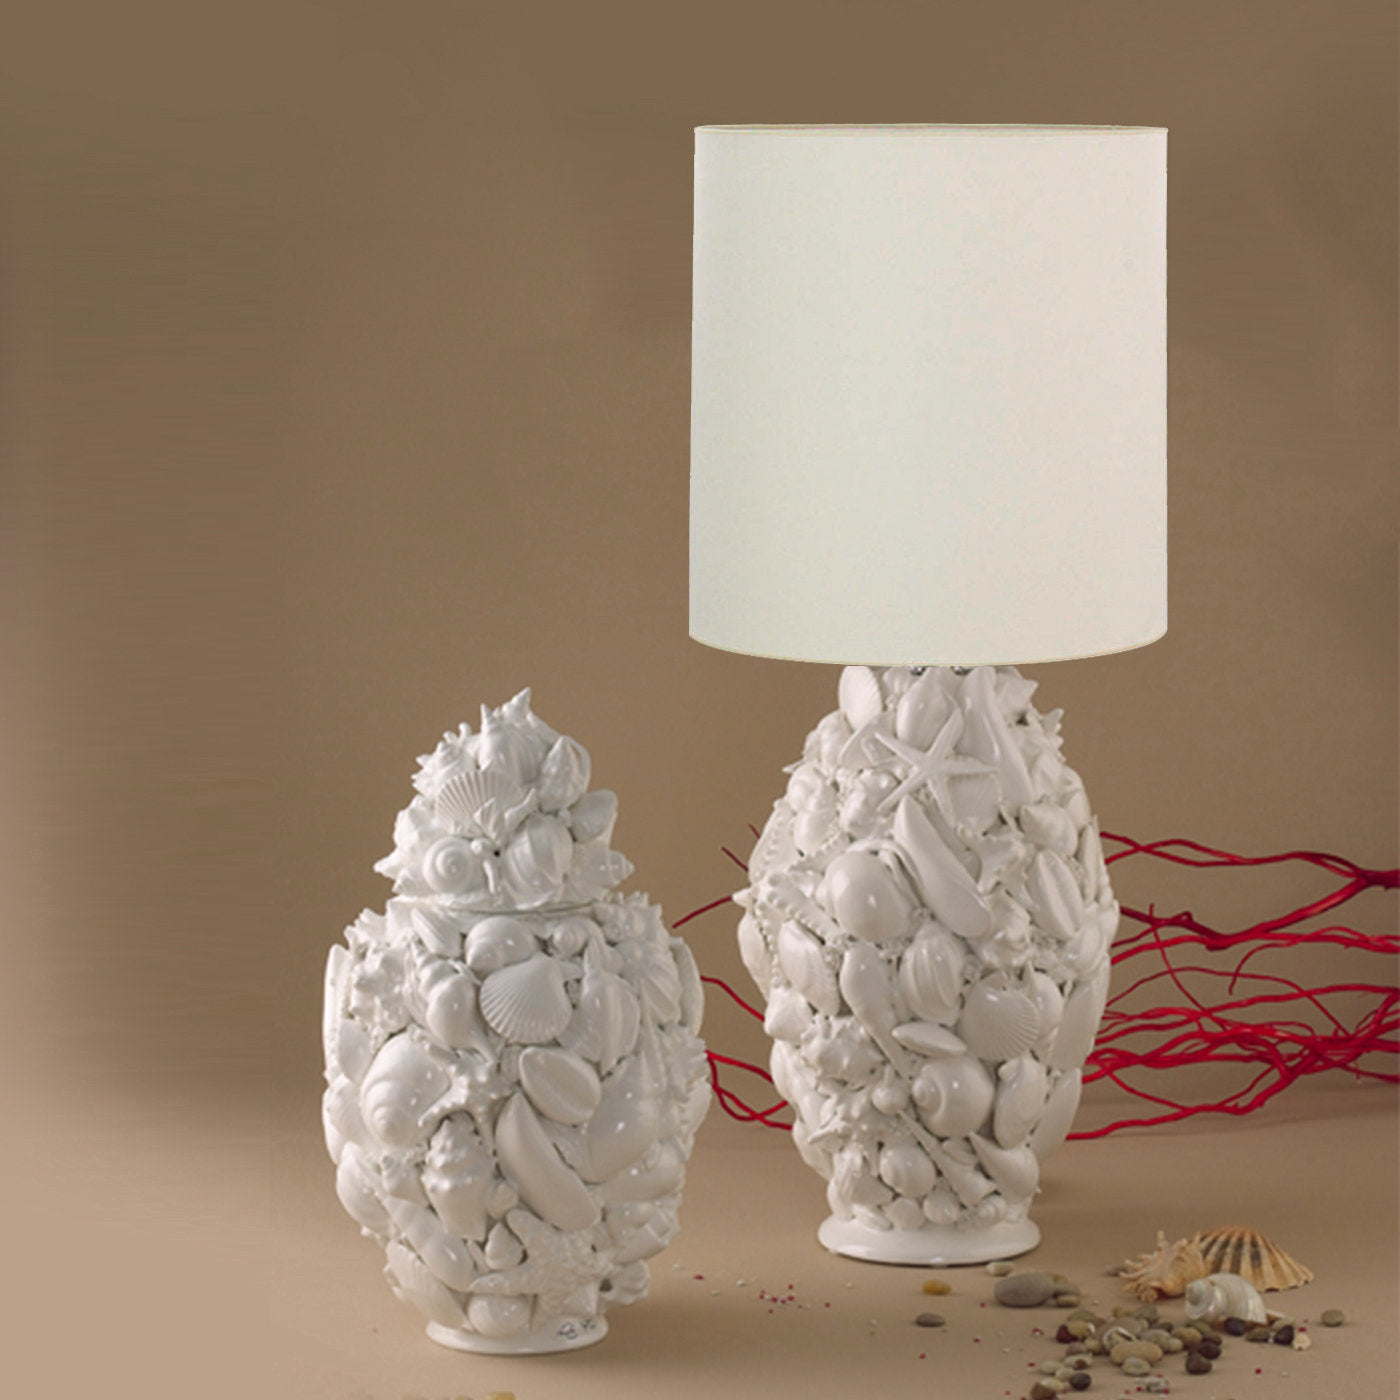 Conchiglia Ovale Ceramic Lamp - Alternative view 1